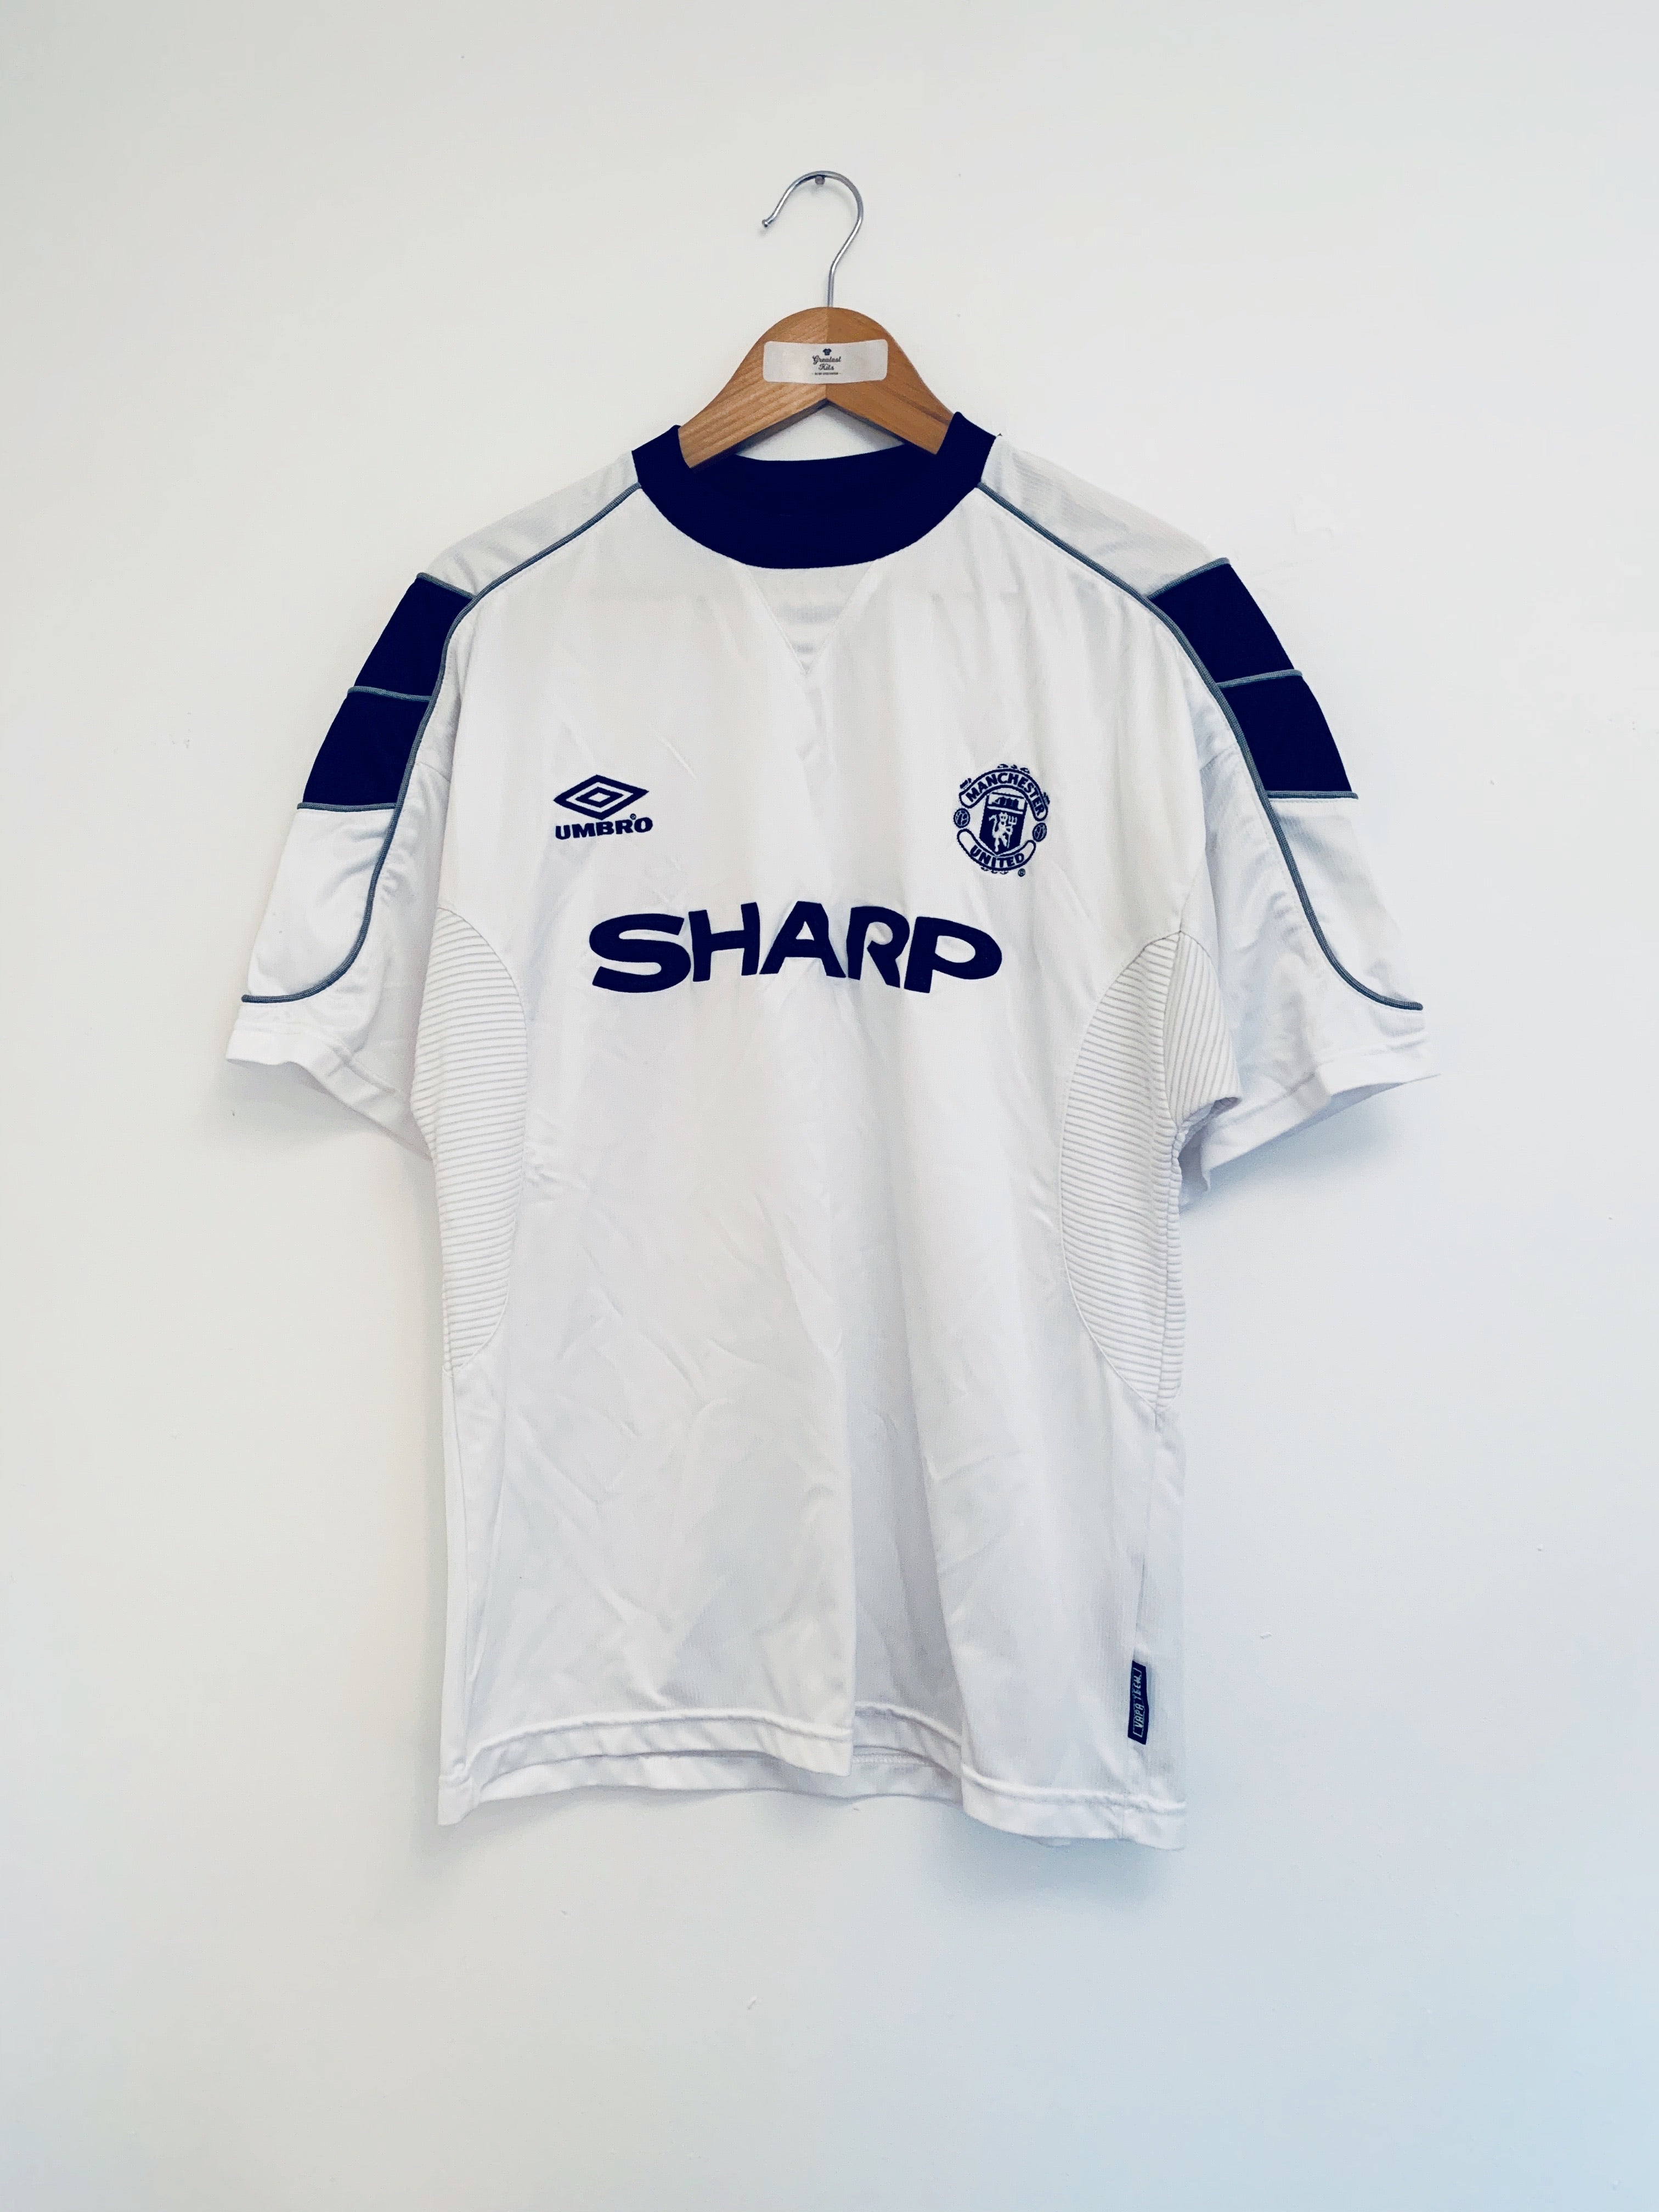 1999/00 Tercera camiseta del Manchester United (M) 9/10